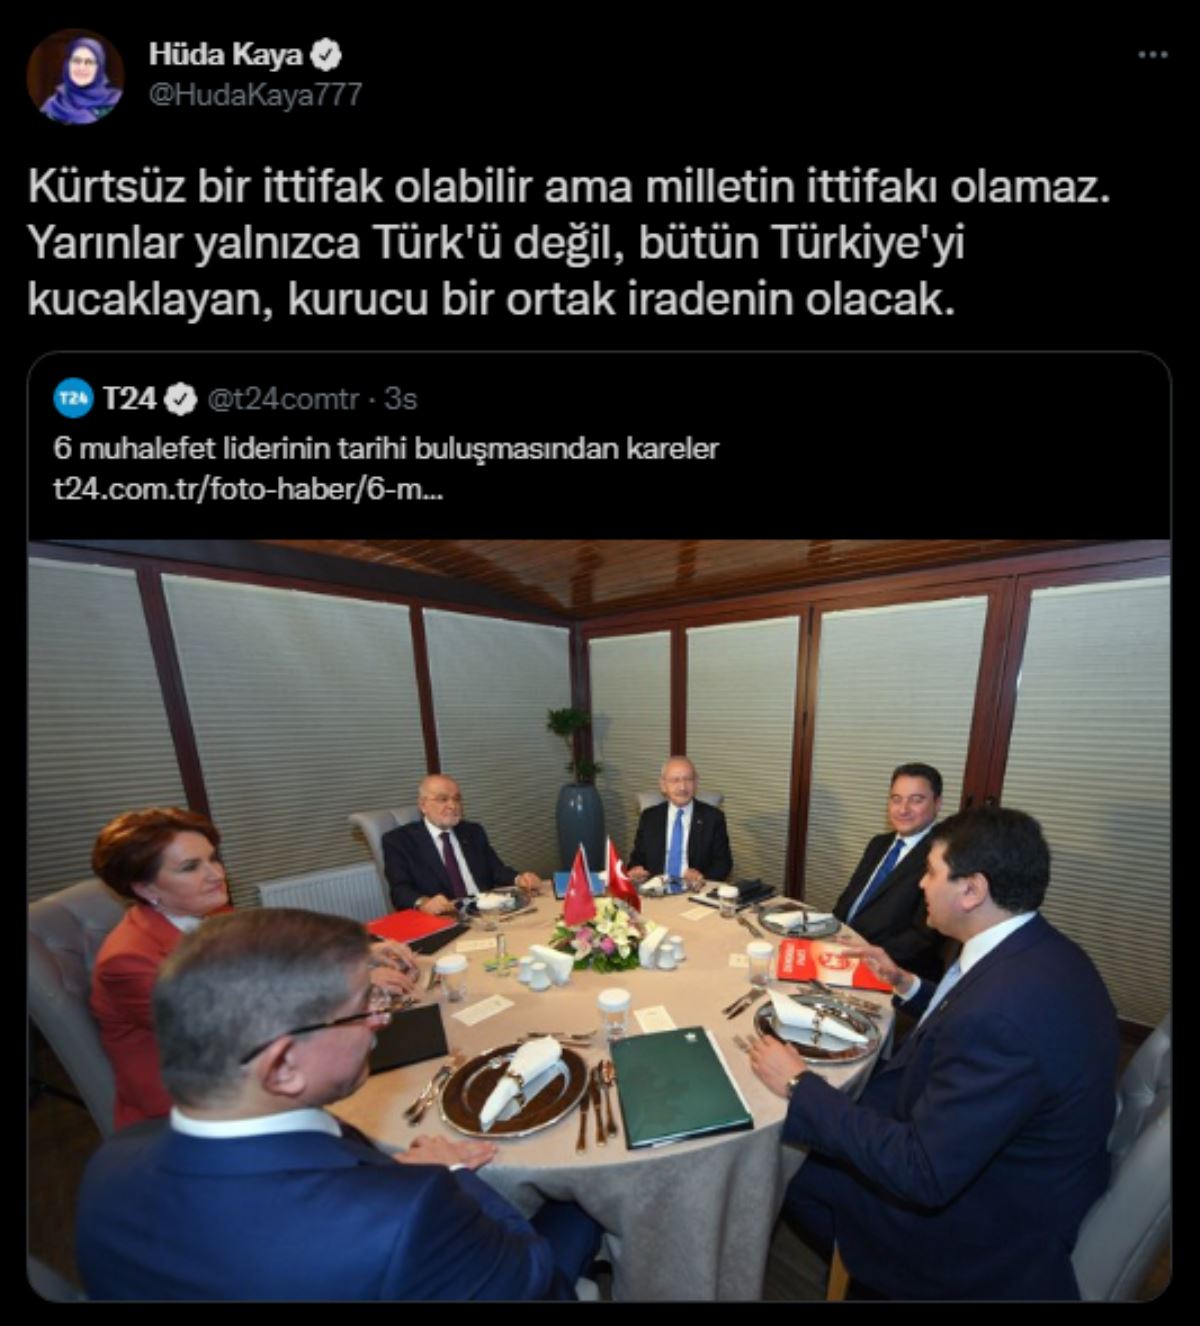 HDP'den 6 liderin görüşmesine ilk açıklama: Kürtsüz bir ittifak olabilir ama milletin ittifakı olamaz